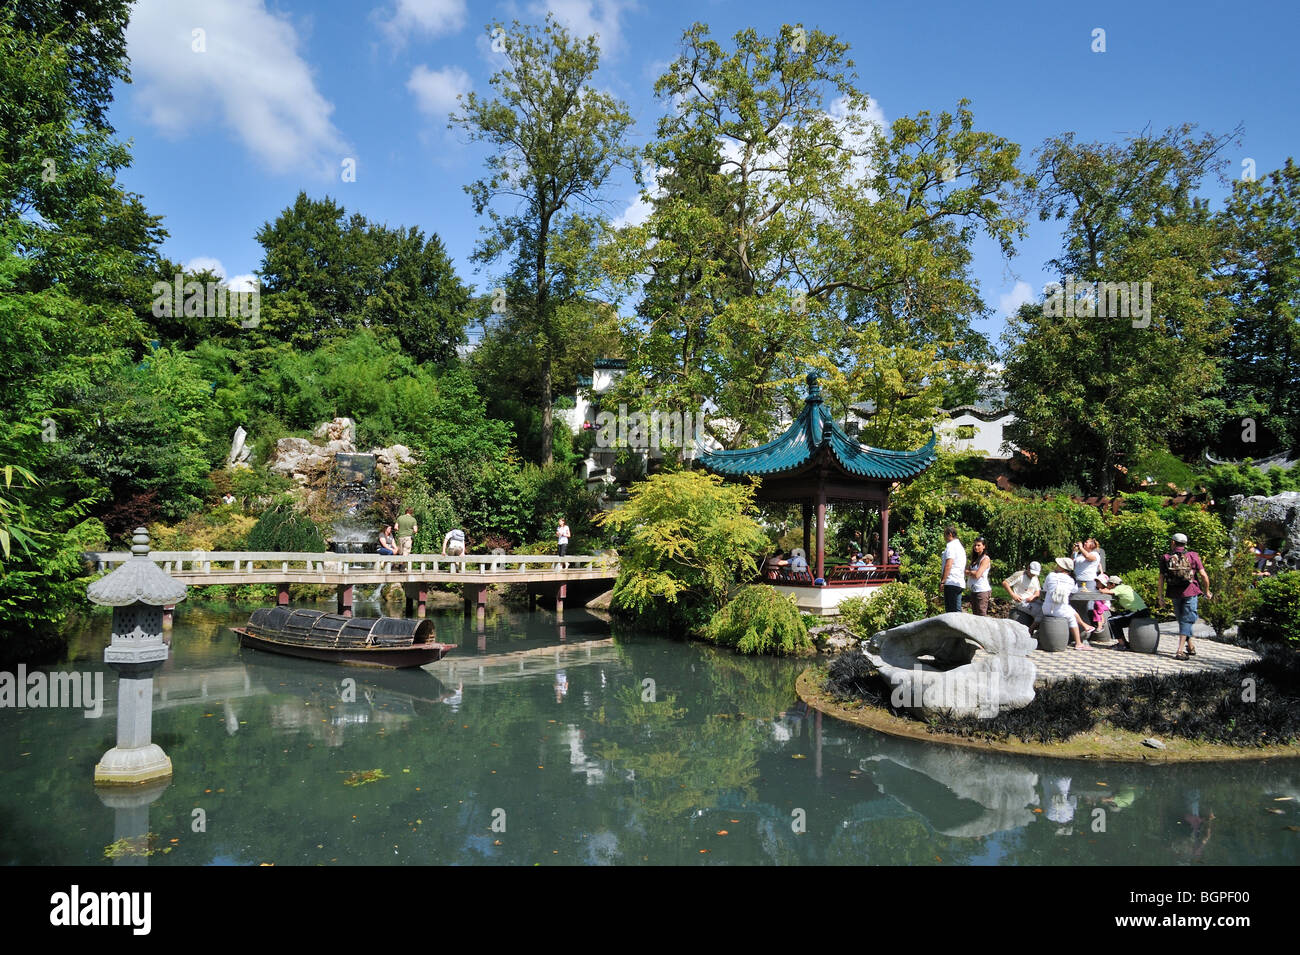 Tempio e laghetto in giardino Cinese presso il parco a tema Pairi Daiza, Belgio Foto Stock